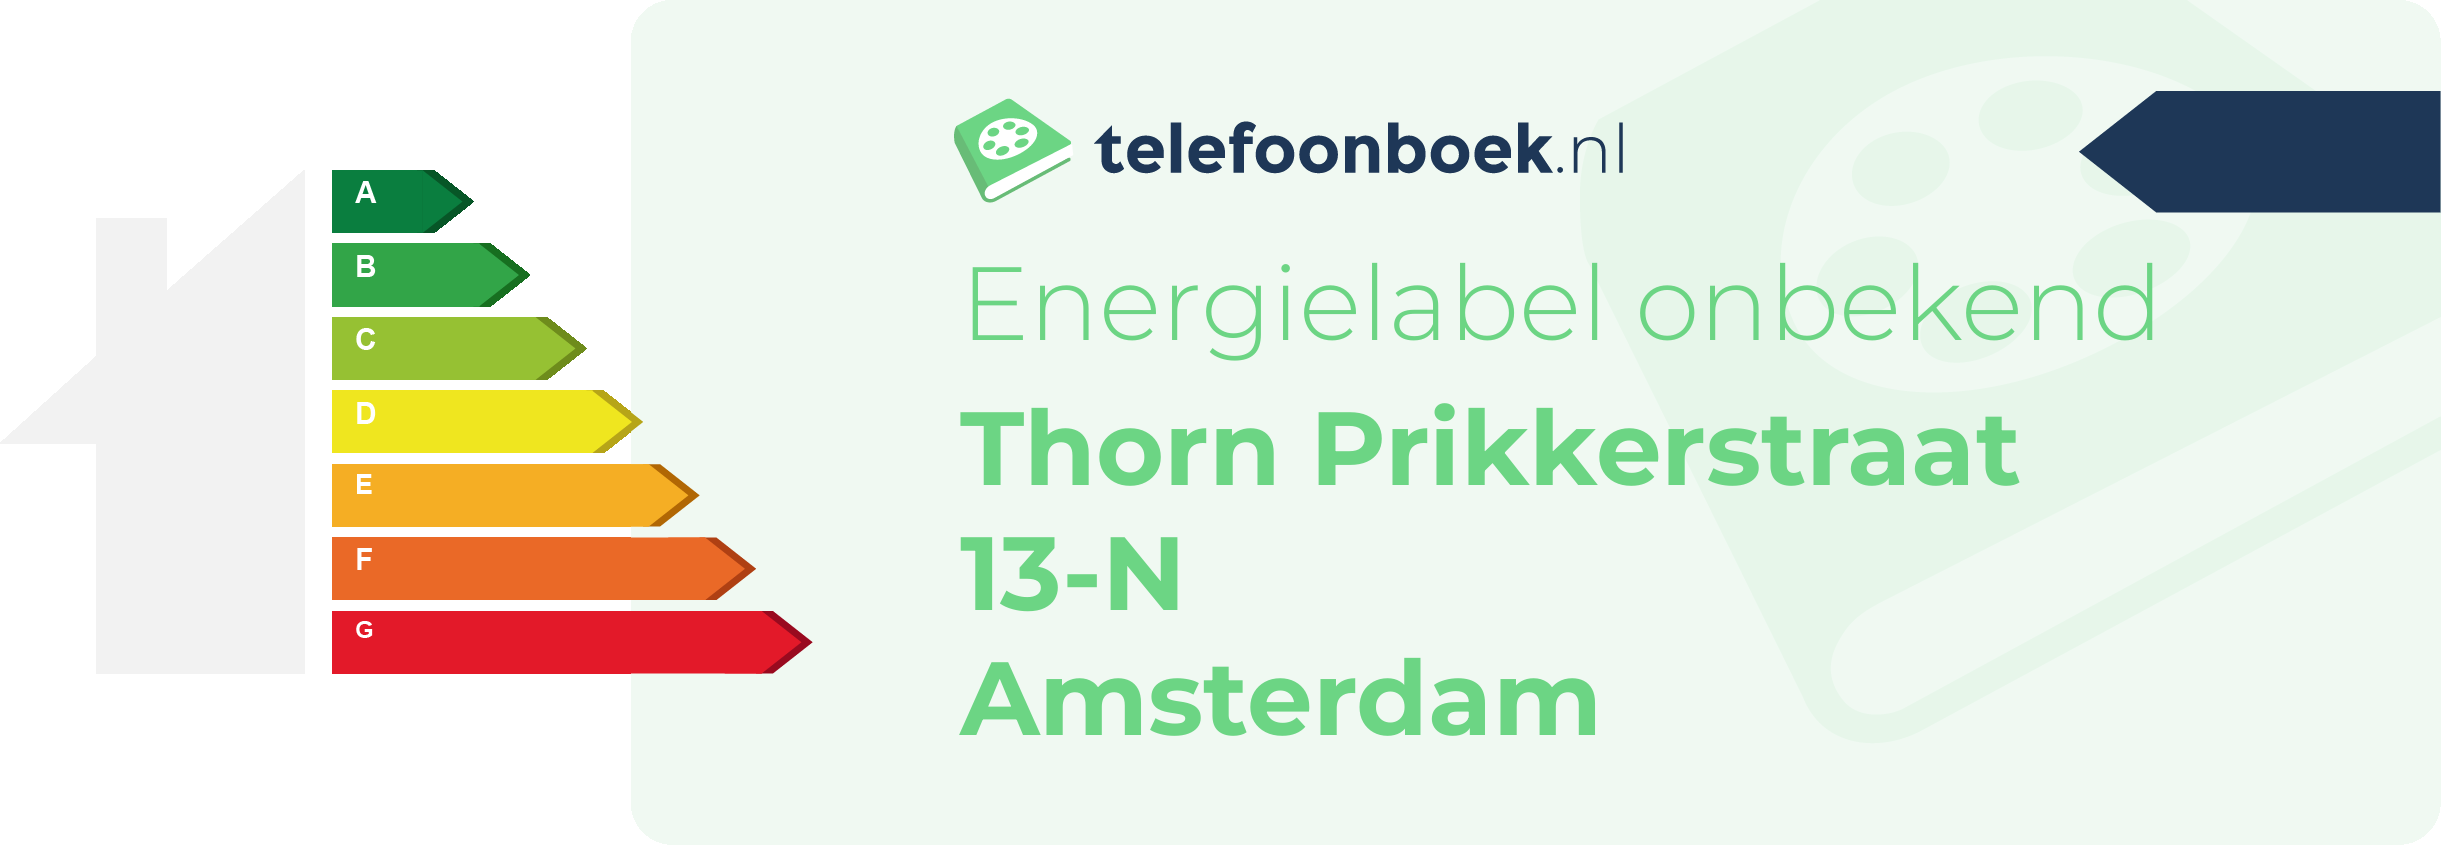 Energielabel Thorn Prikkerstraat 13-N Amsterdam